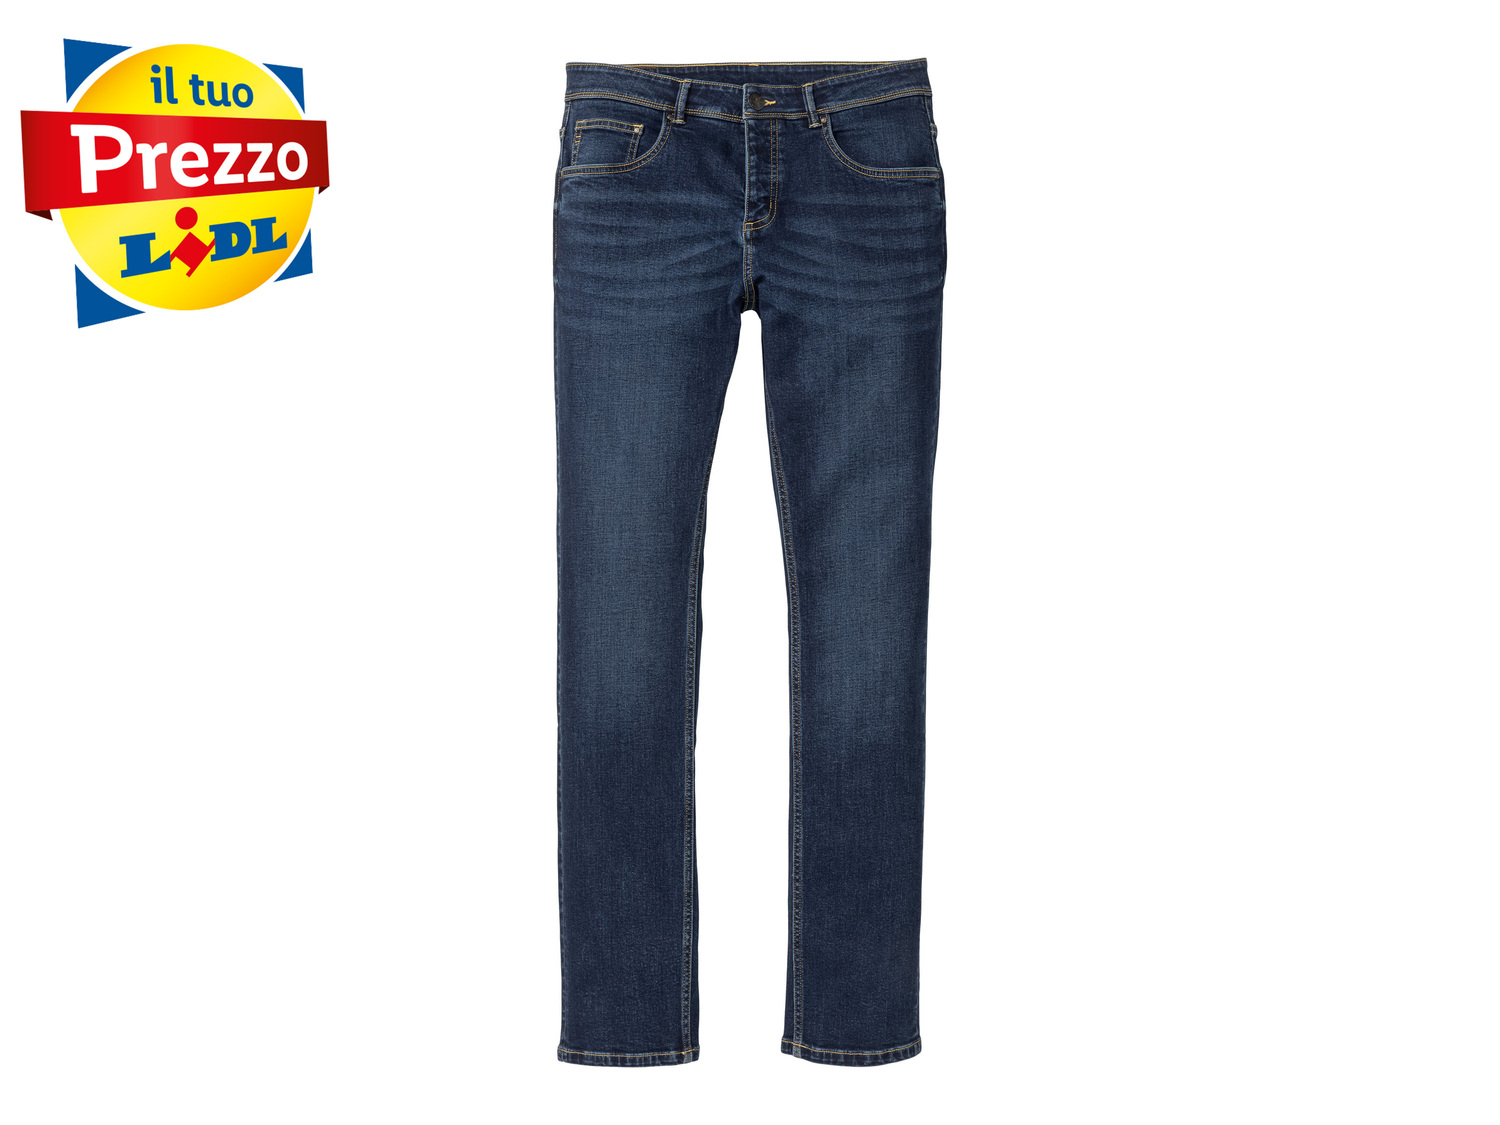 Jeans Slim Fit da uomo Livergy, prezzo 9.99 &#8364; 
Misure: 46-56
Taglie disponibili

Caratteristiche

- ...